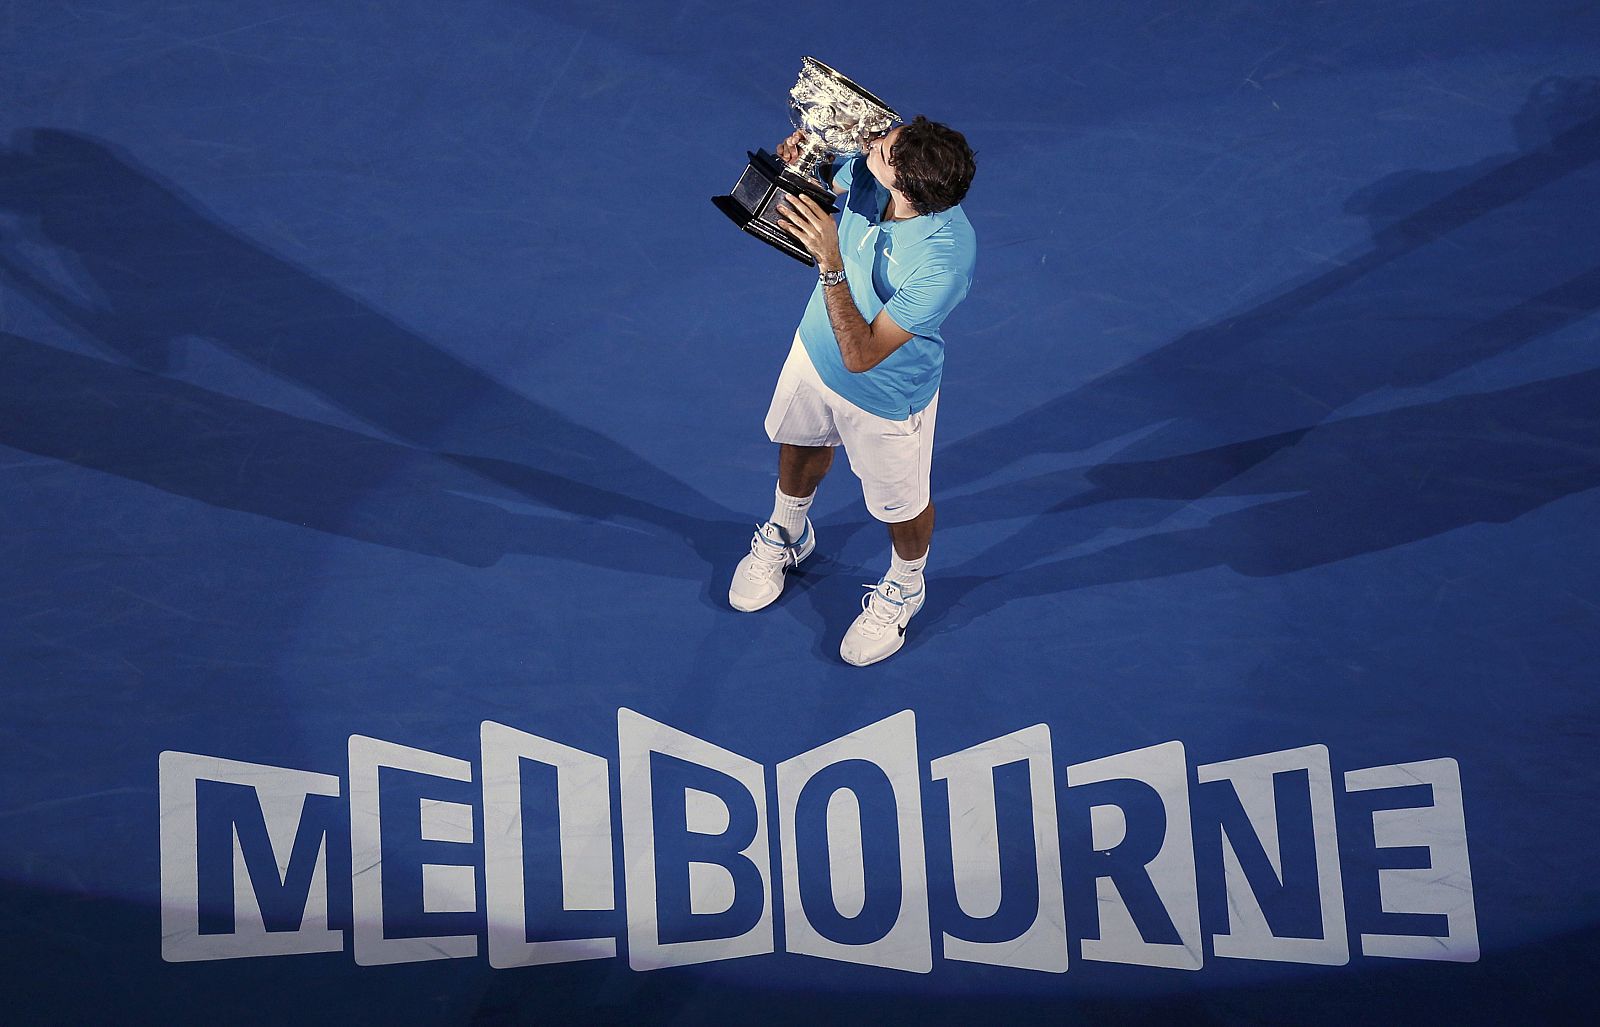 El suizo Roger Federer sumó su 16º título del Grand Slam en Australia.